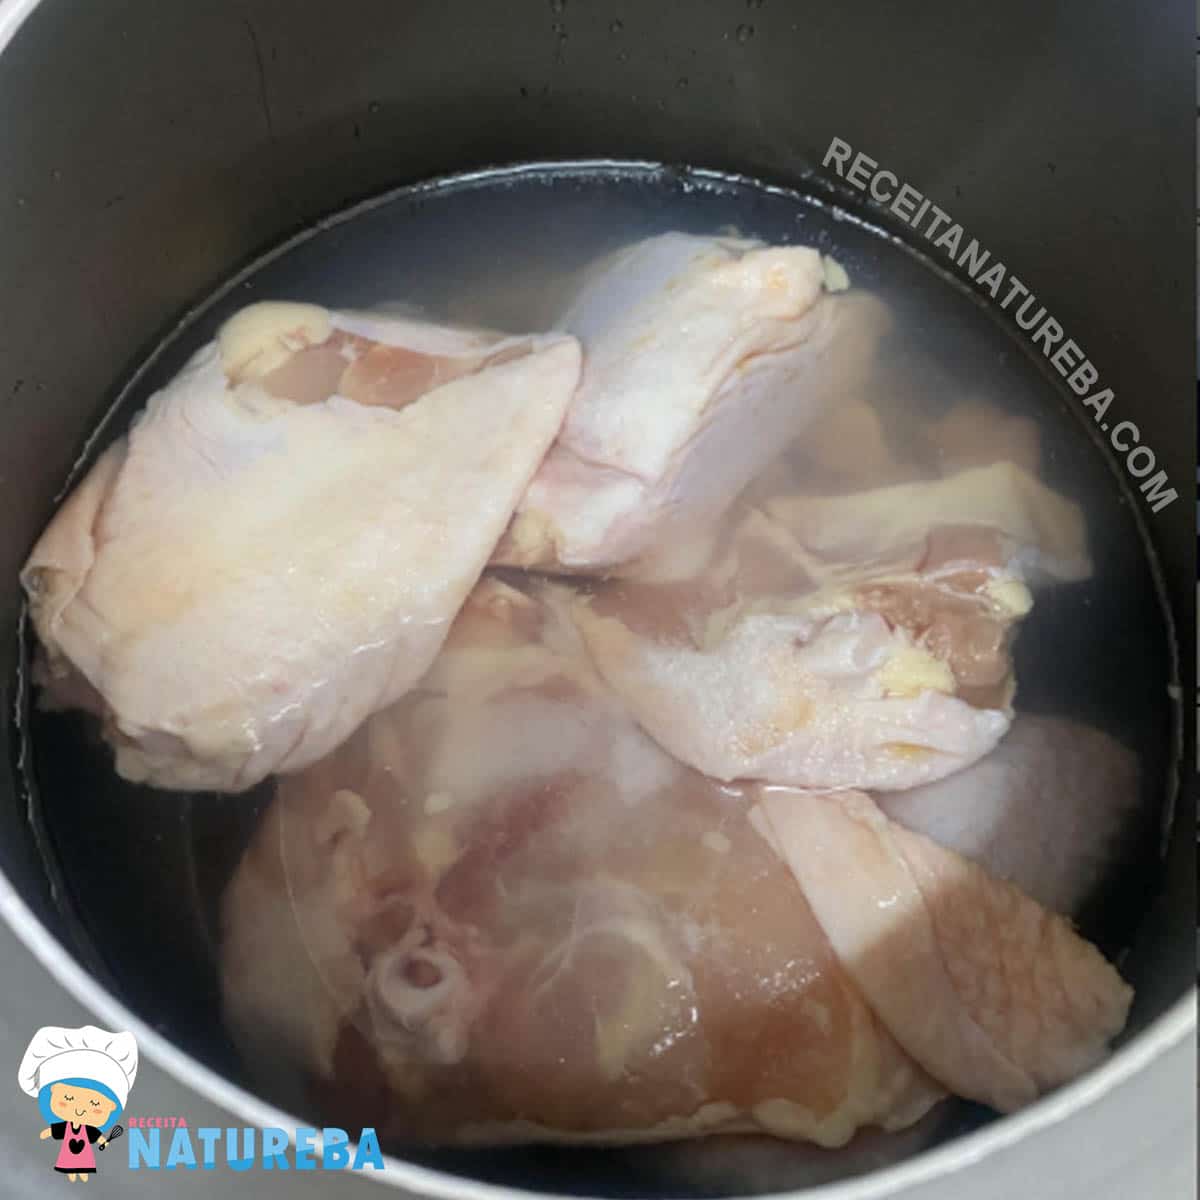 colocando o frango para cozinhar